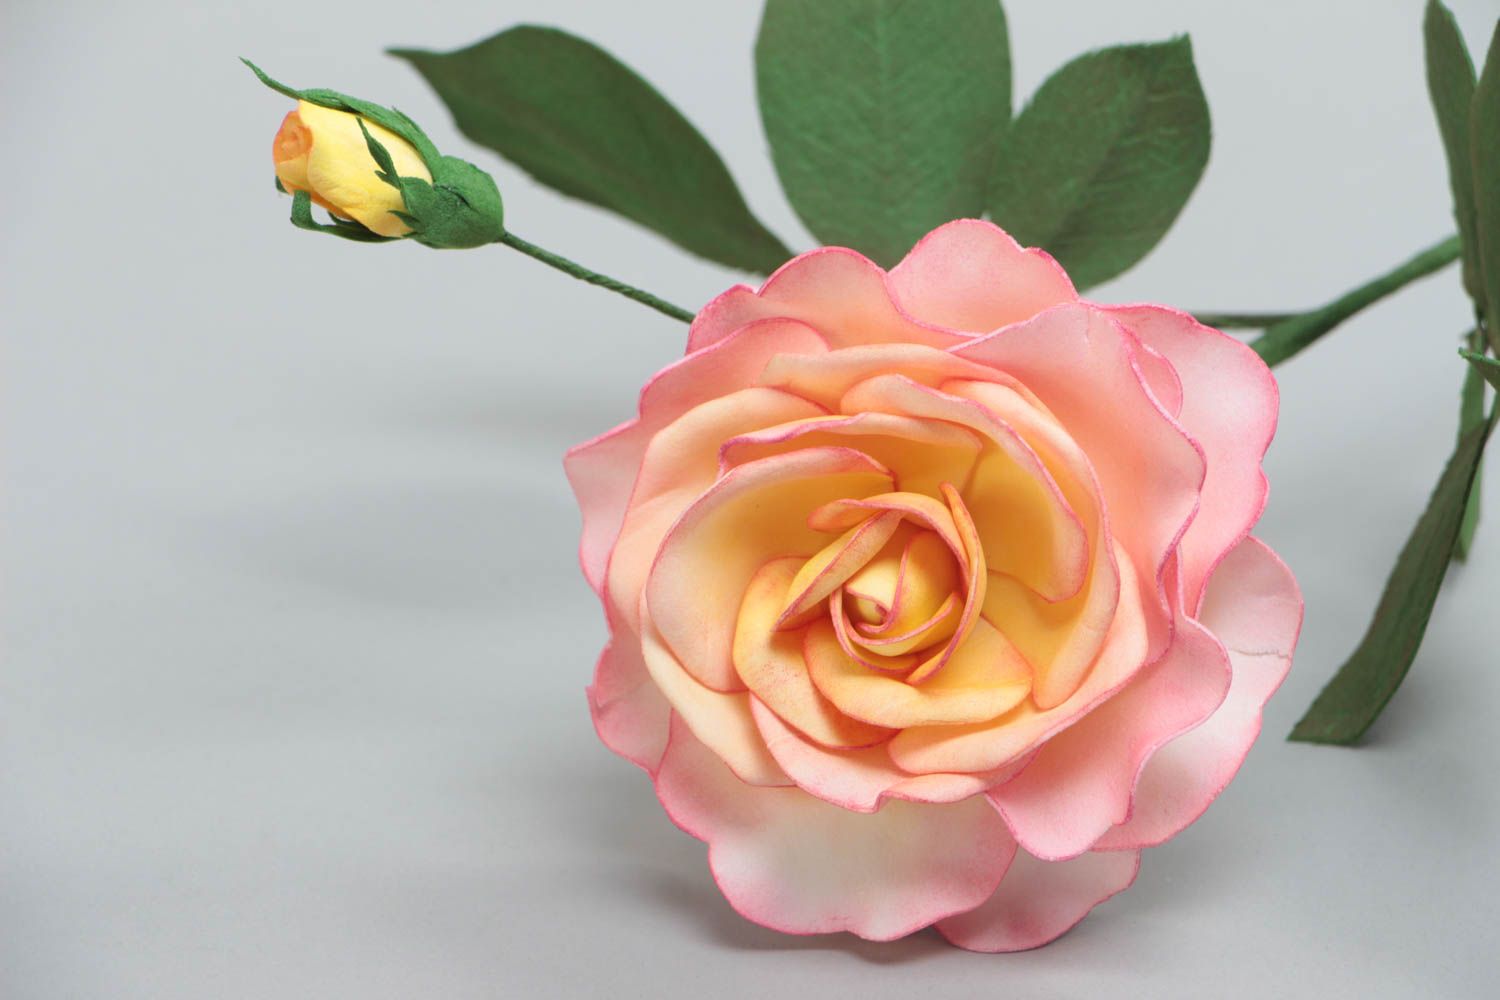 Розовая роза из фоамирана красивый цветок для декора дома ручной работы фото 4